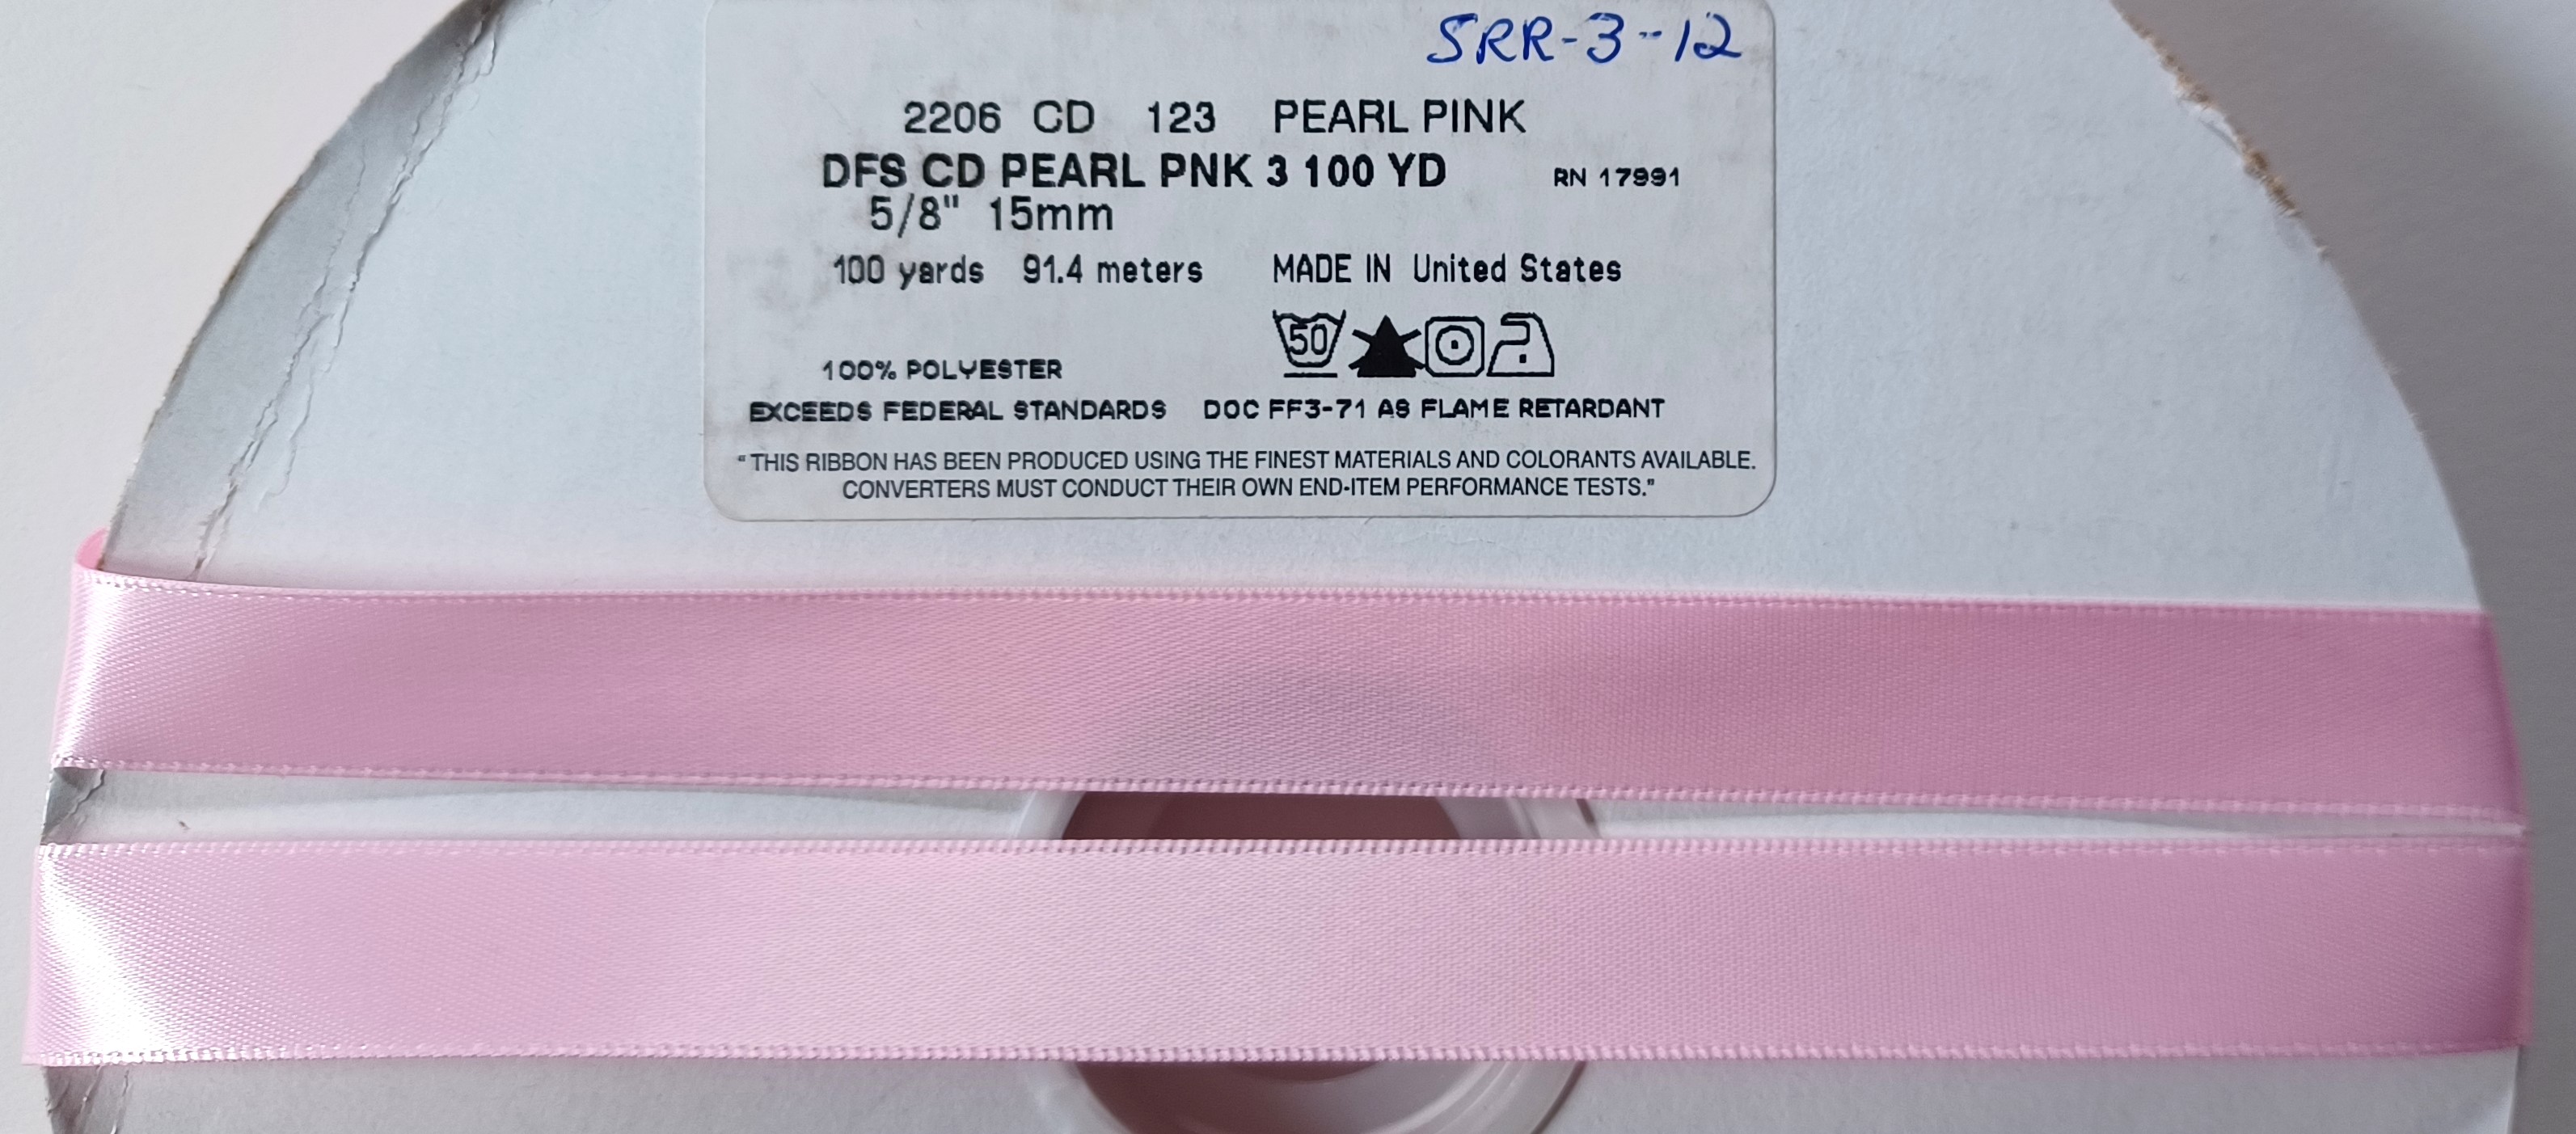 Pearl Pink 5/8" Satin Ribbon